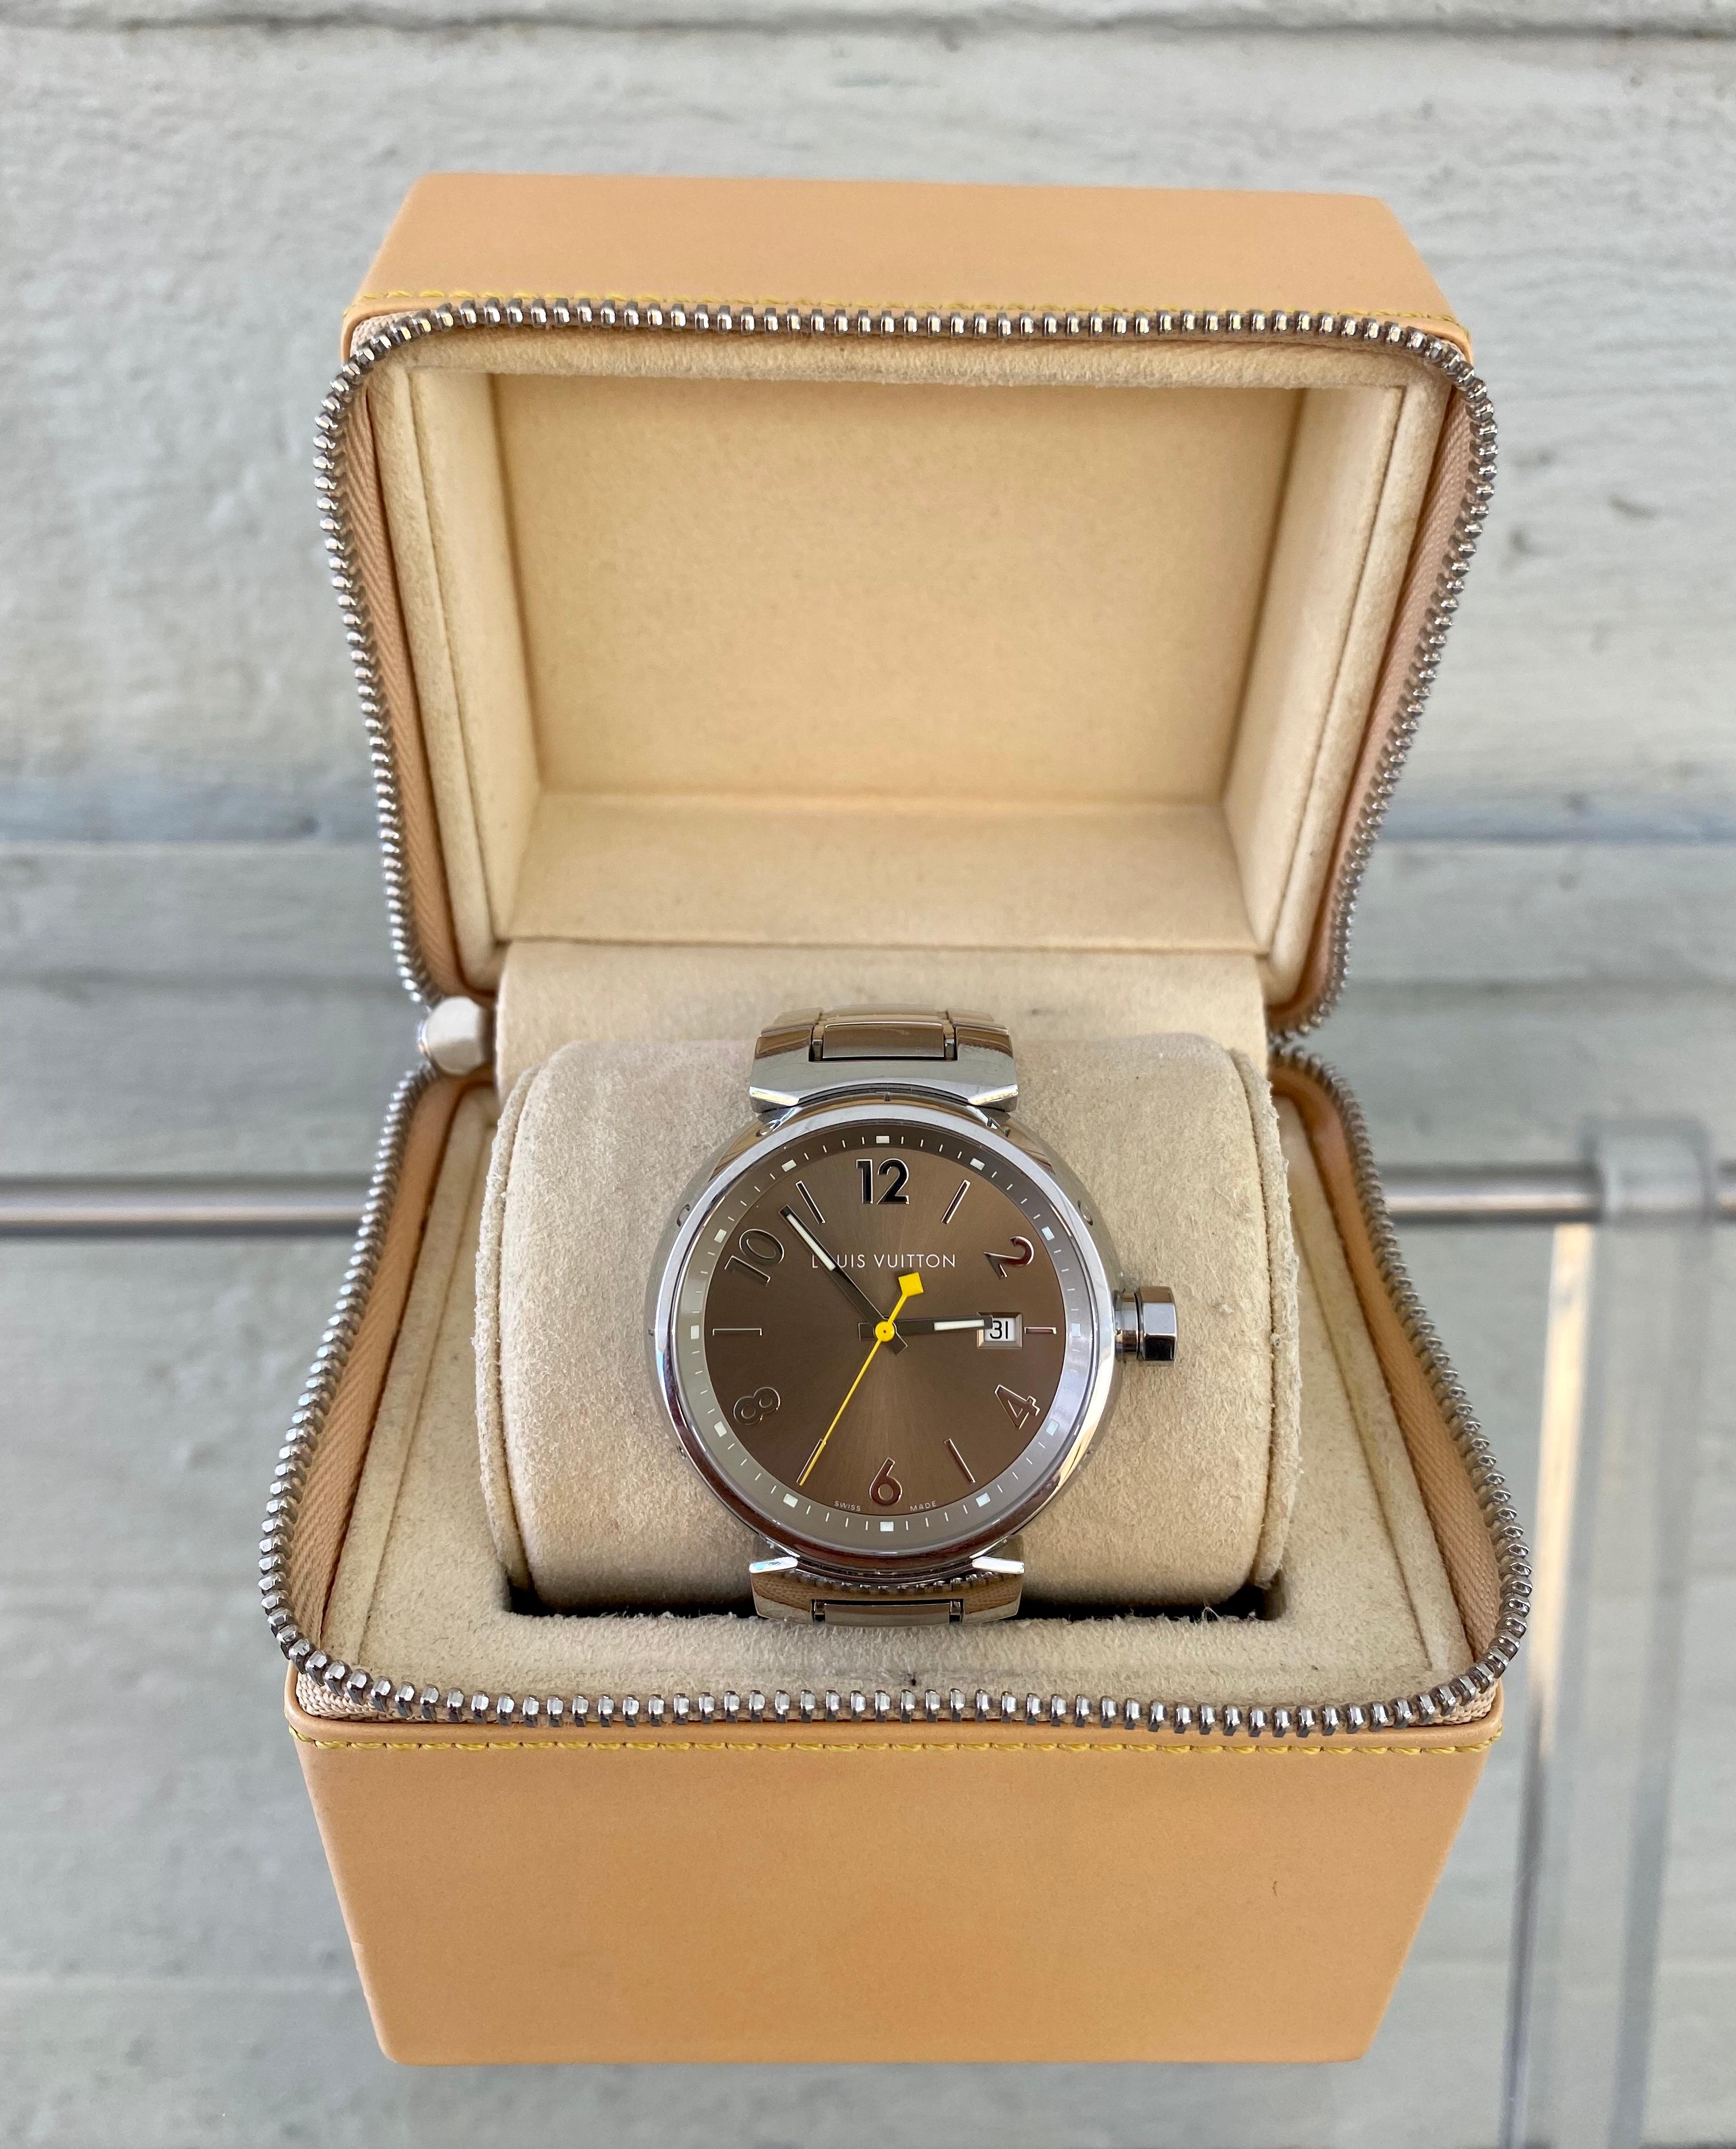 Klassisch und zeitlos  Louis Vuitton Tambour. Diese elegante Uhrenkollektion wurde bereits im Jahr 2000 lanciert. Seitdem gilt sie als das Markenzeichen der Marke. Es wird in verschiedenen Ausführungen für den Mann oder die Frau angeboten. Der